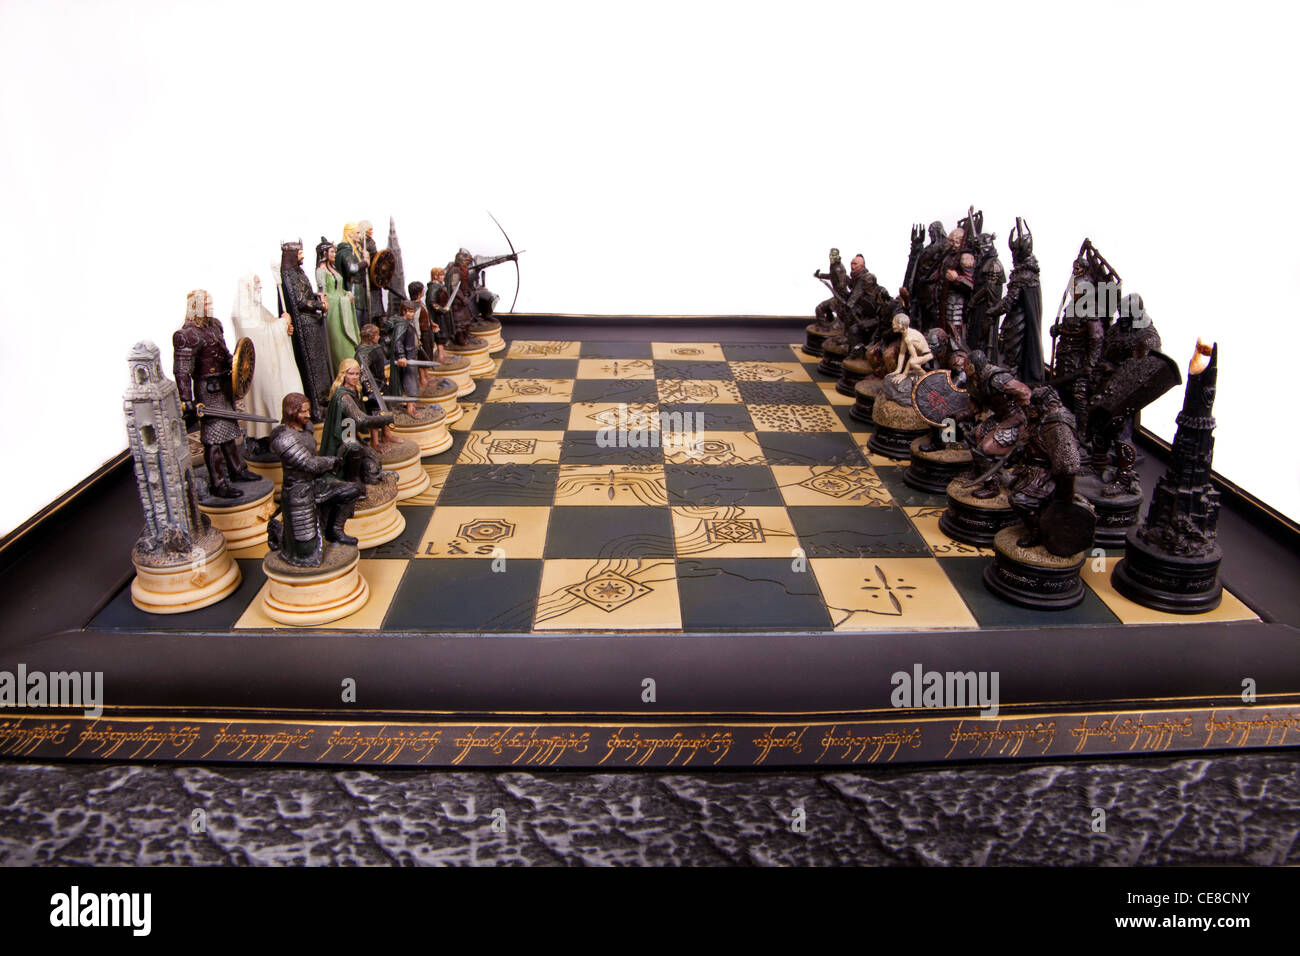 Herr der Ringe-Schach-Satz Stockfotografie - Alamy